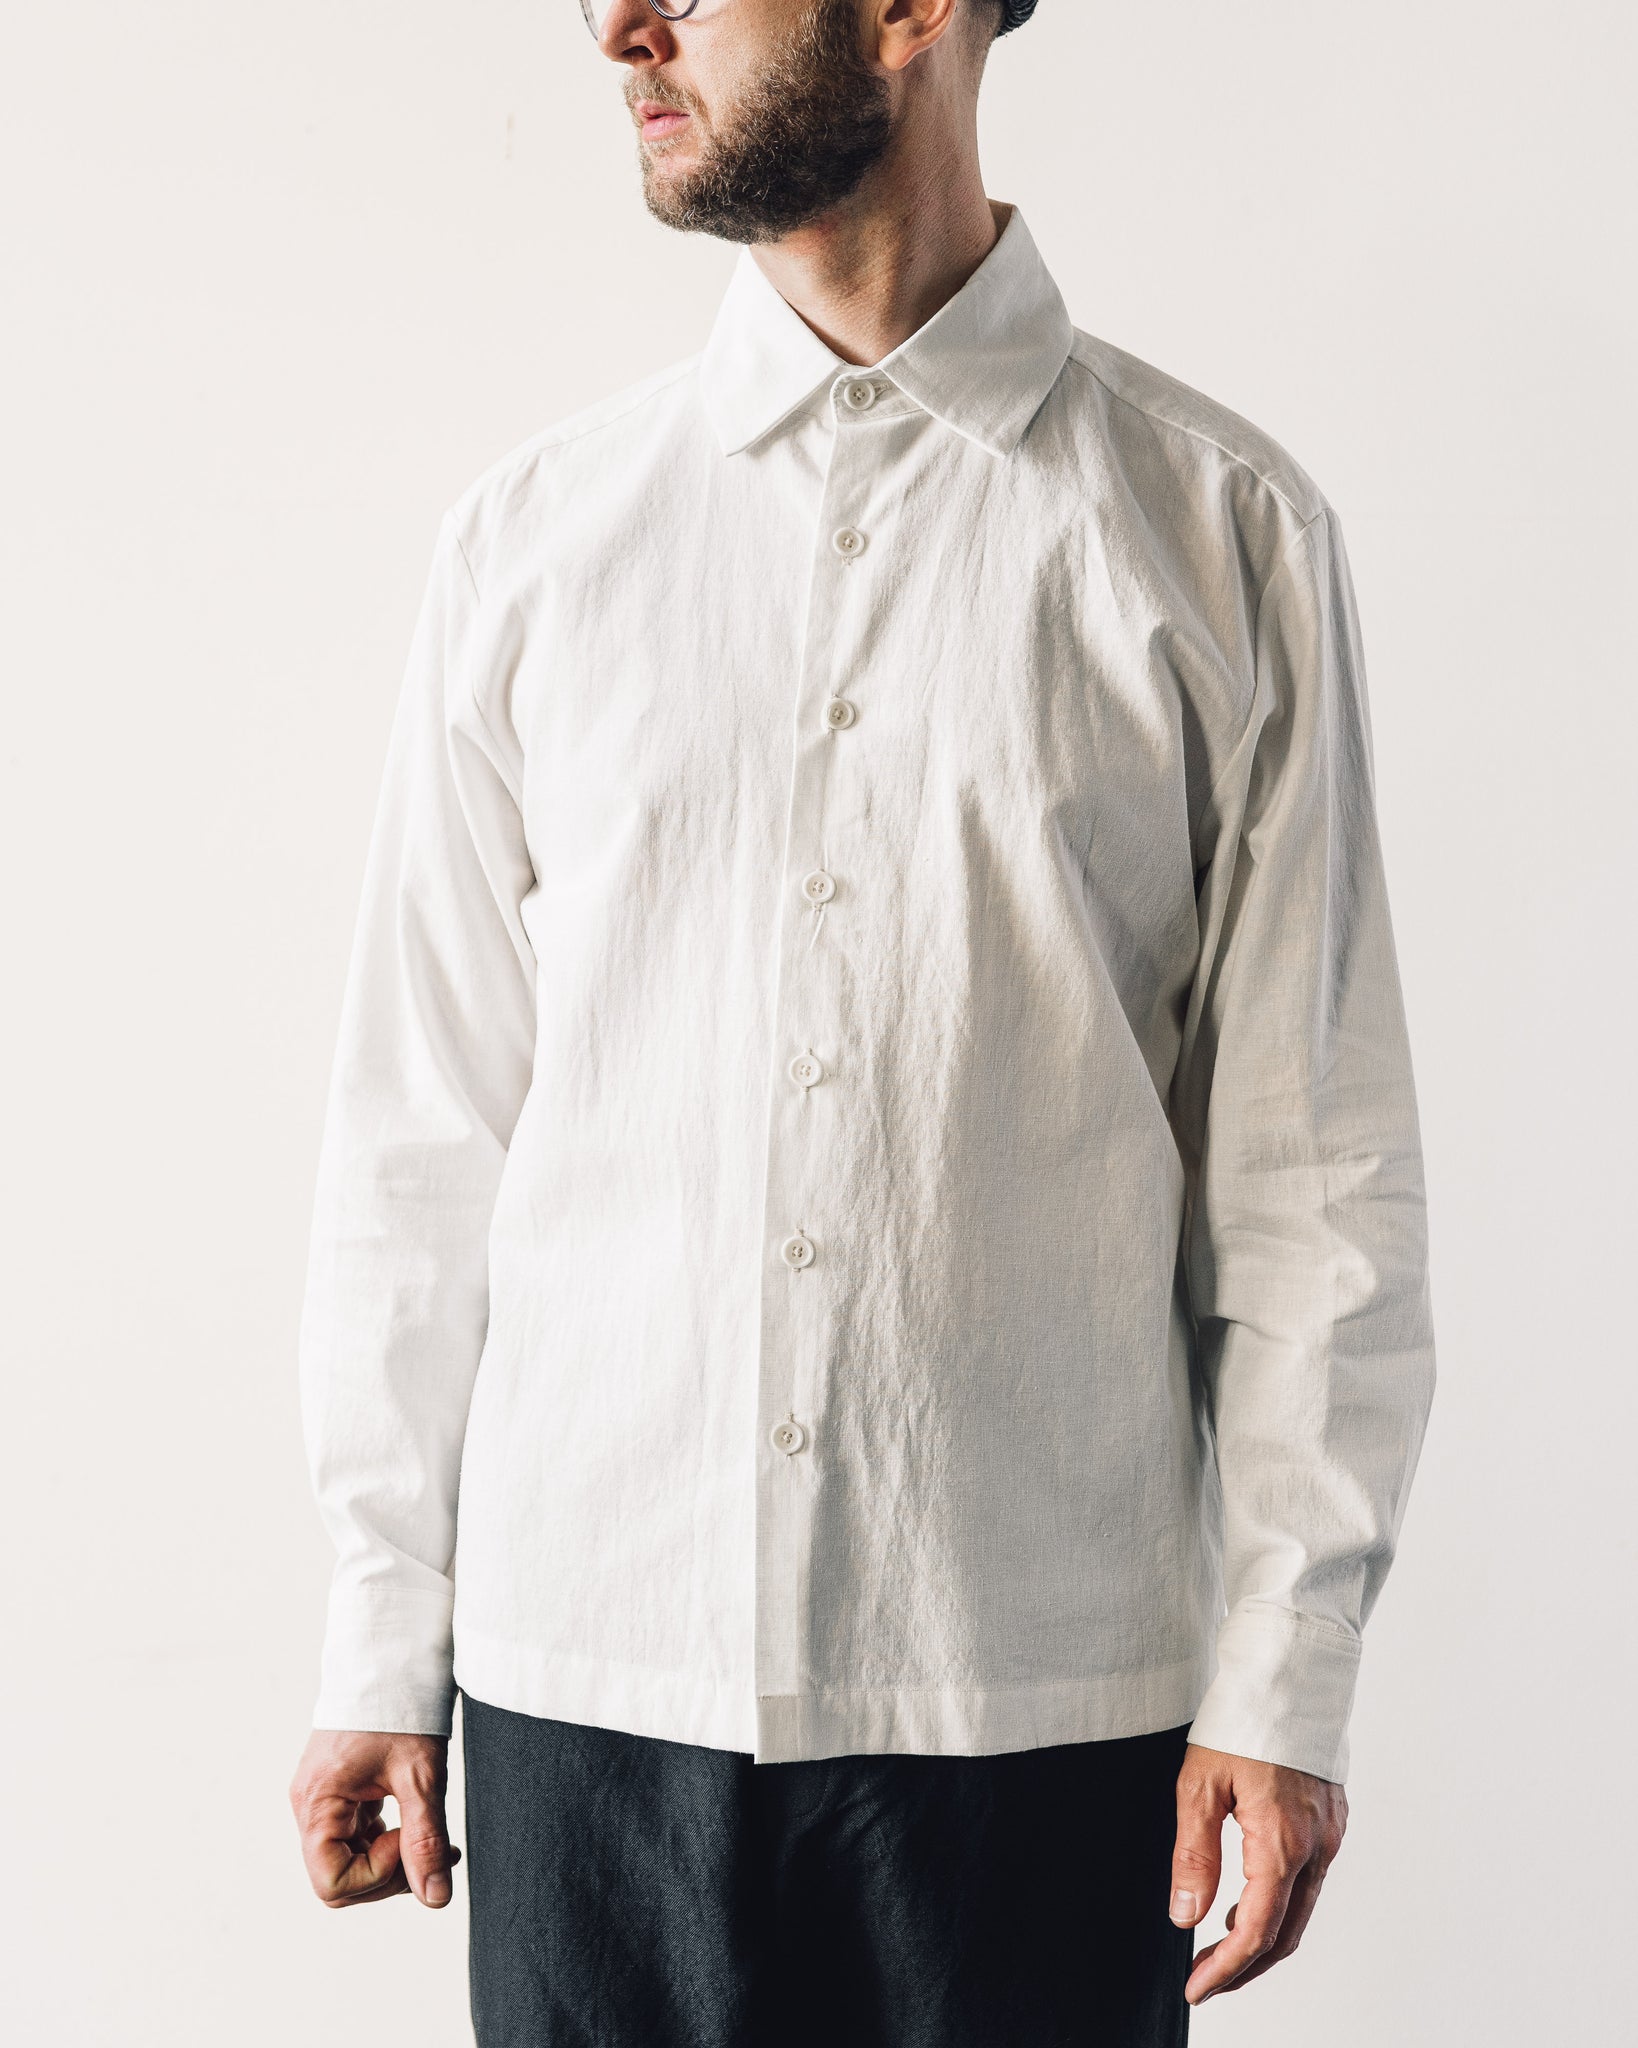 Evan Kinori Hemp Flat Hem Shirt, Natural